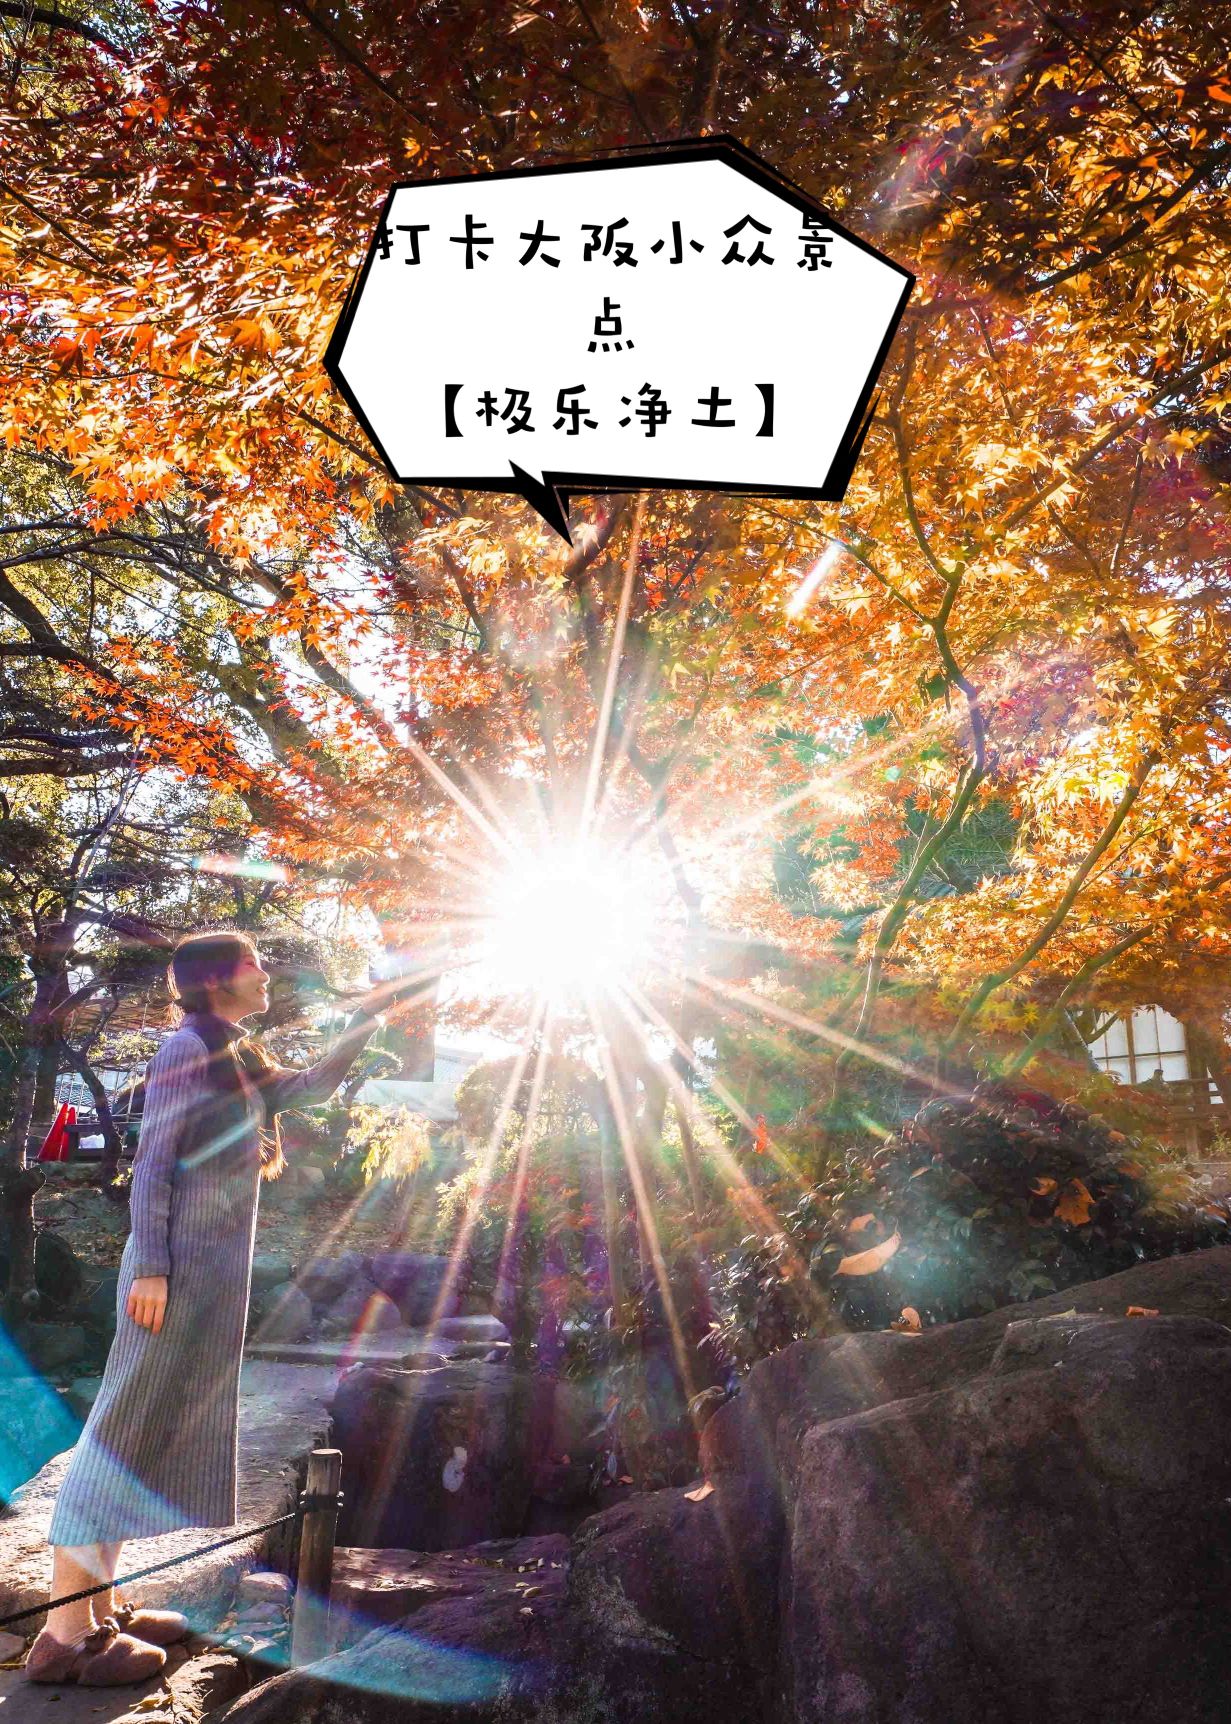 📍 【打卡极乐净土】          在 大阪  四天王寺 和一起同行的小伙伴随便逛了逛，逛着逛着